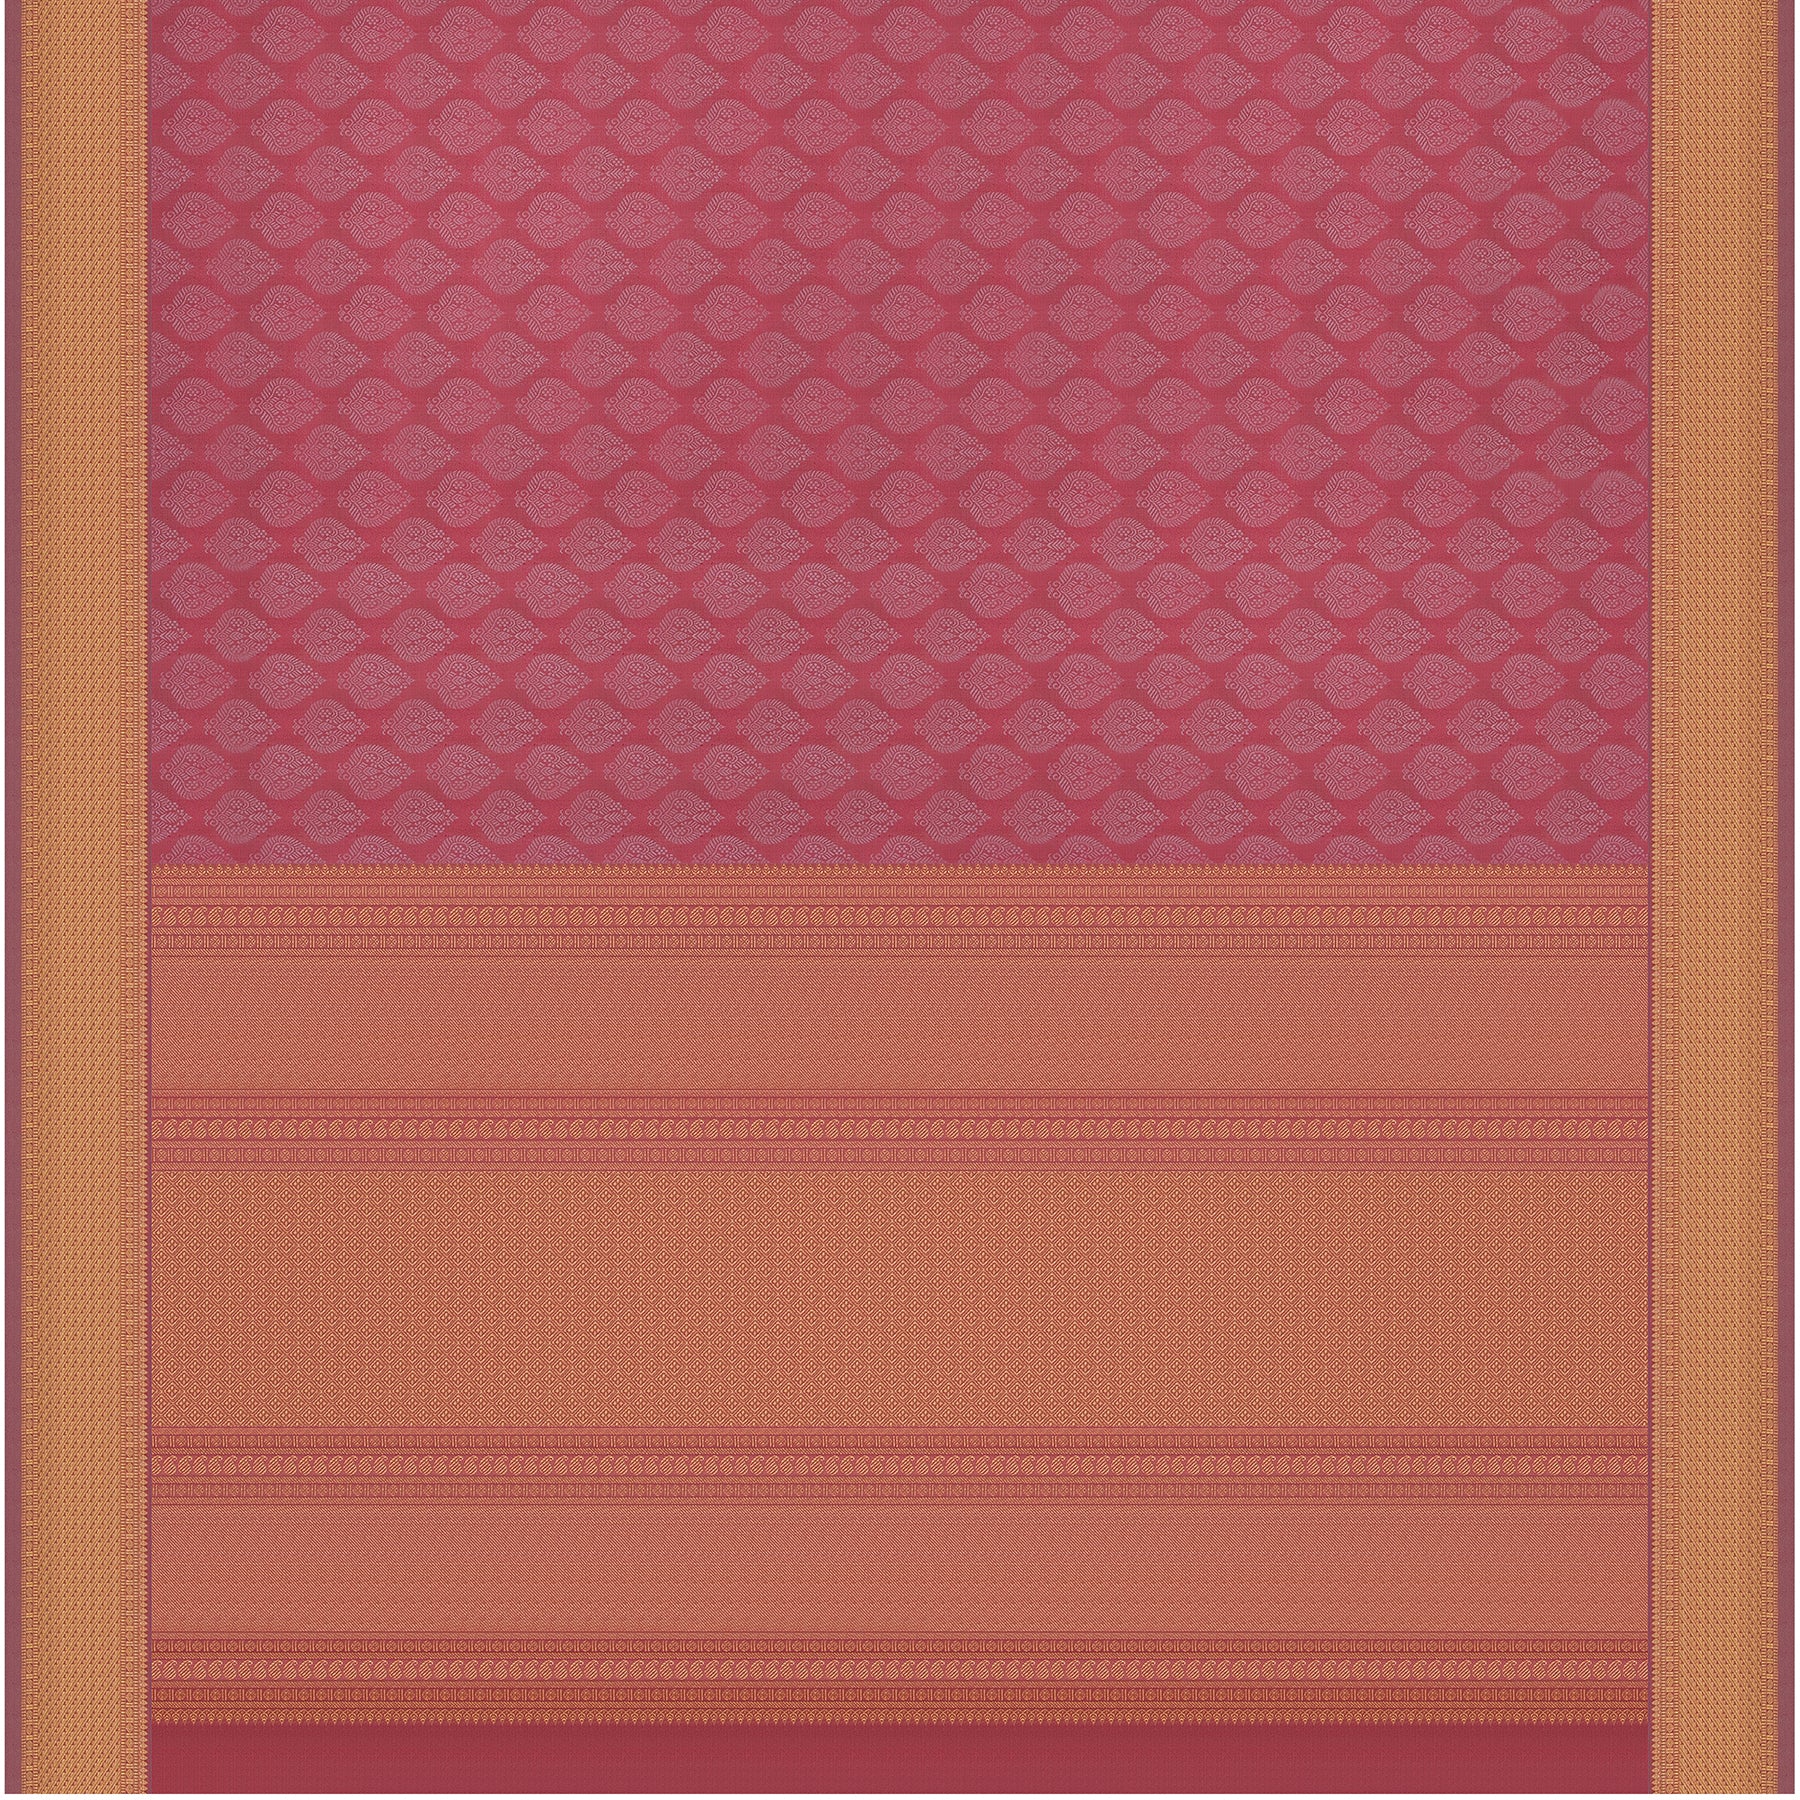 Kanakavalli Kanjivaram Silk Sari 23-599-HS001-06141 - Full View